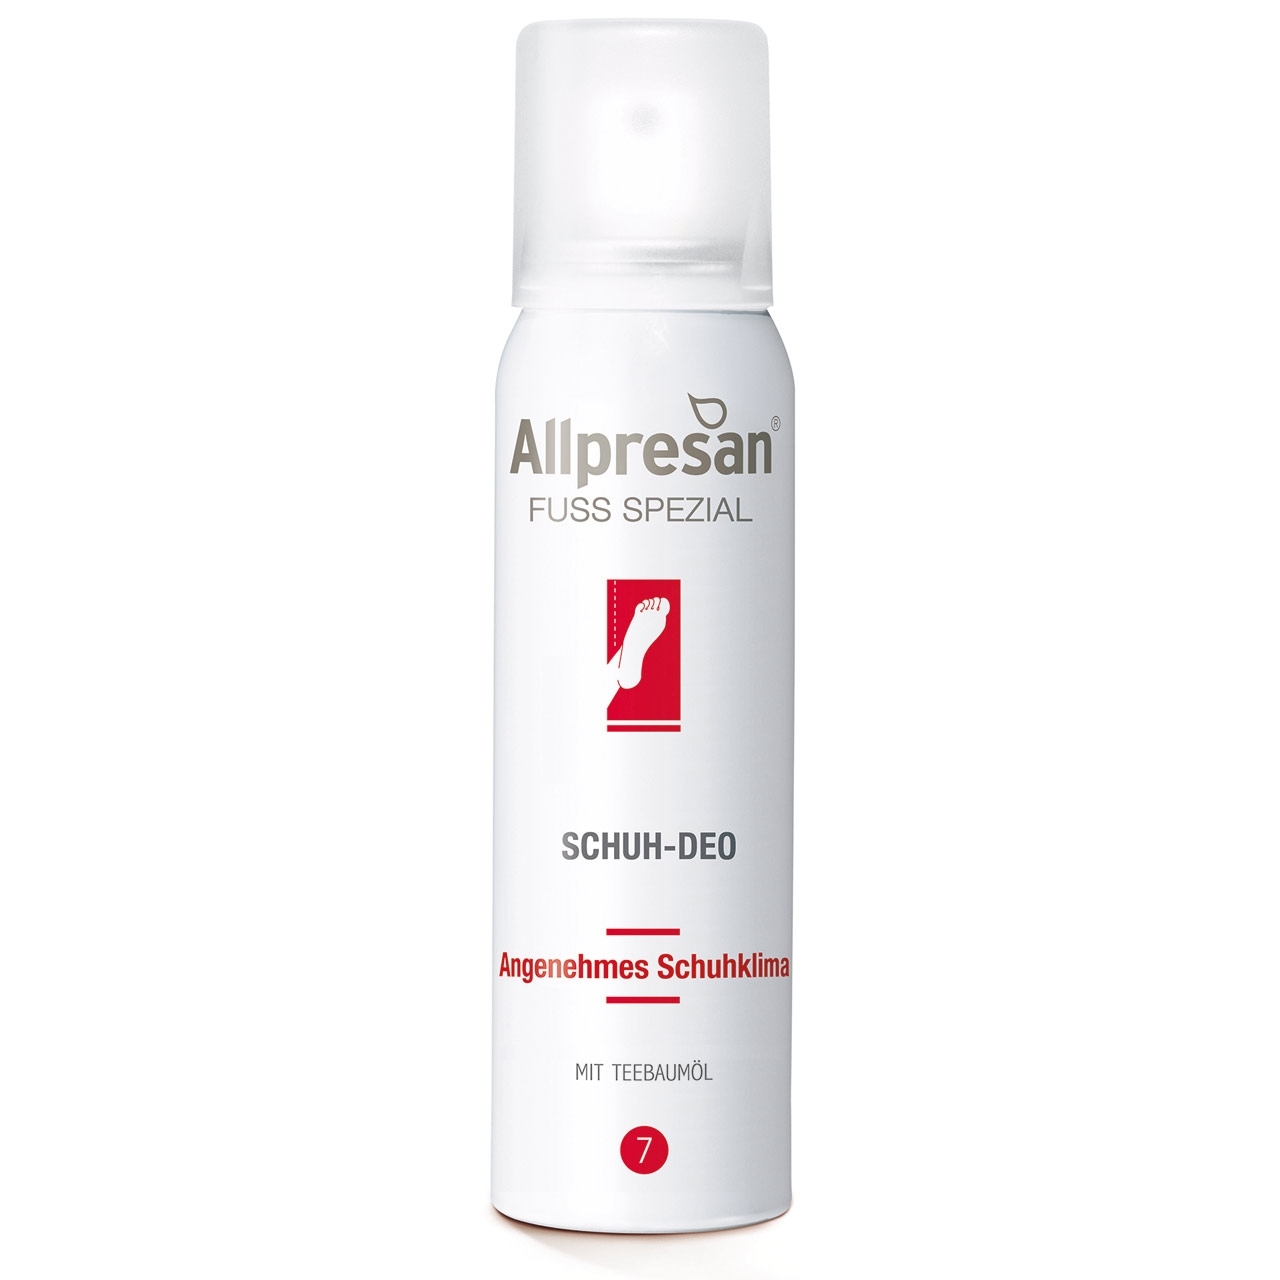 Allpresan Schuh-Spray Fuß Spezial 7, pilz-empfindliche Haut, 100 ml